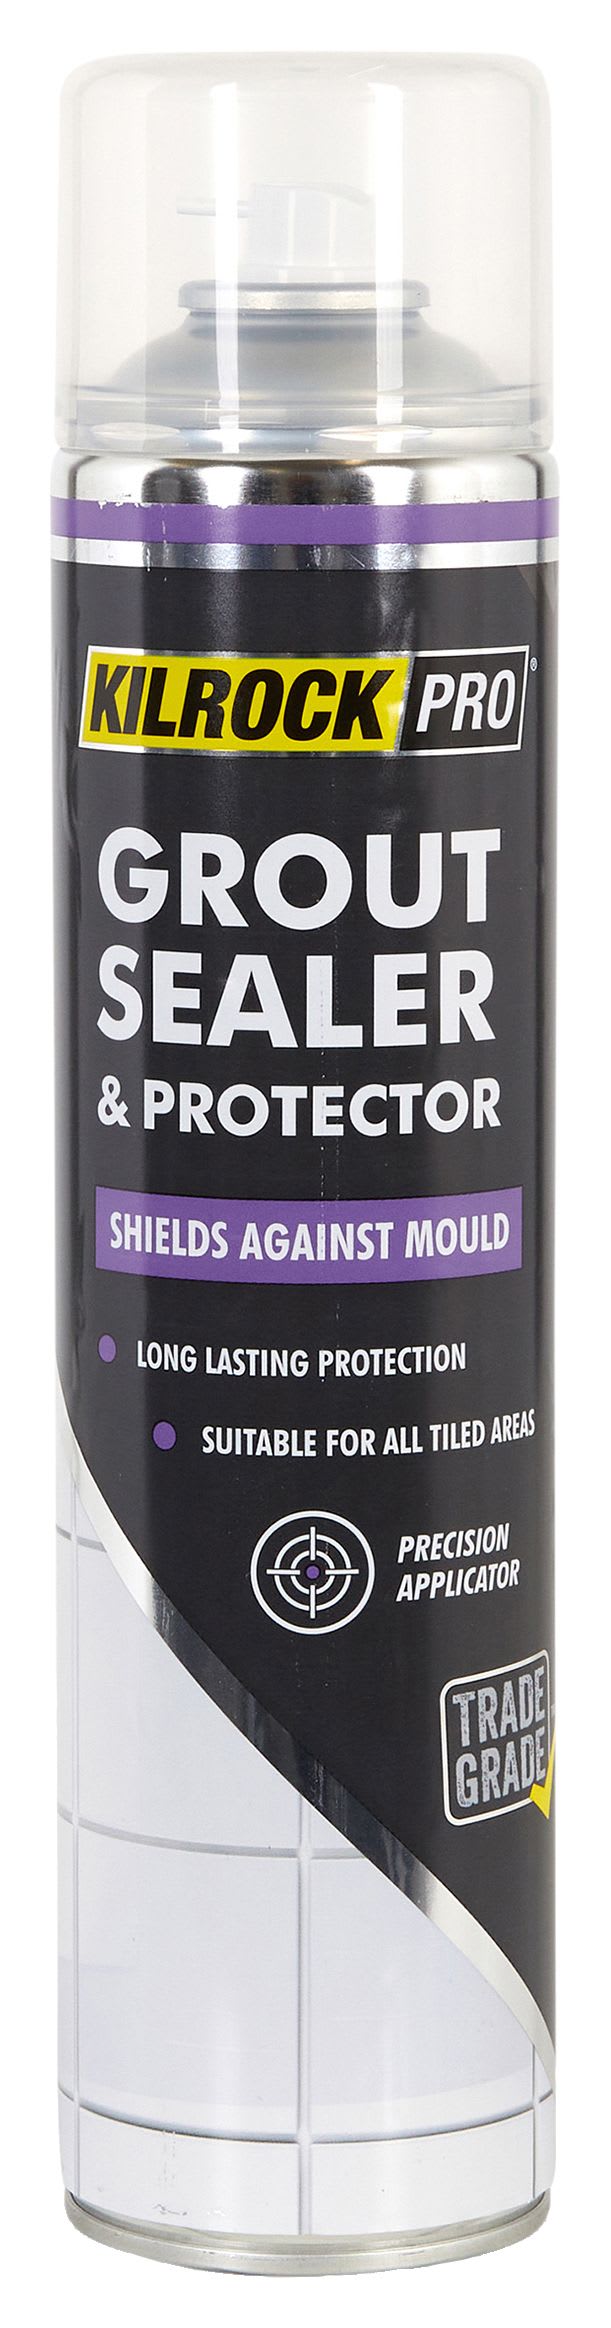 KilrockPRO Grout Sealer & Protector - 600ml